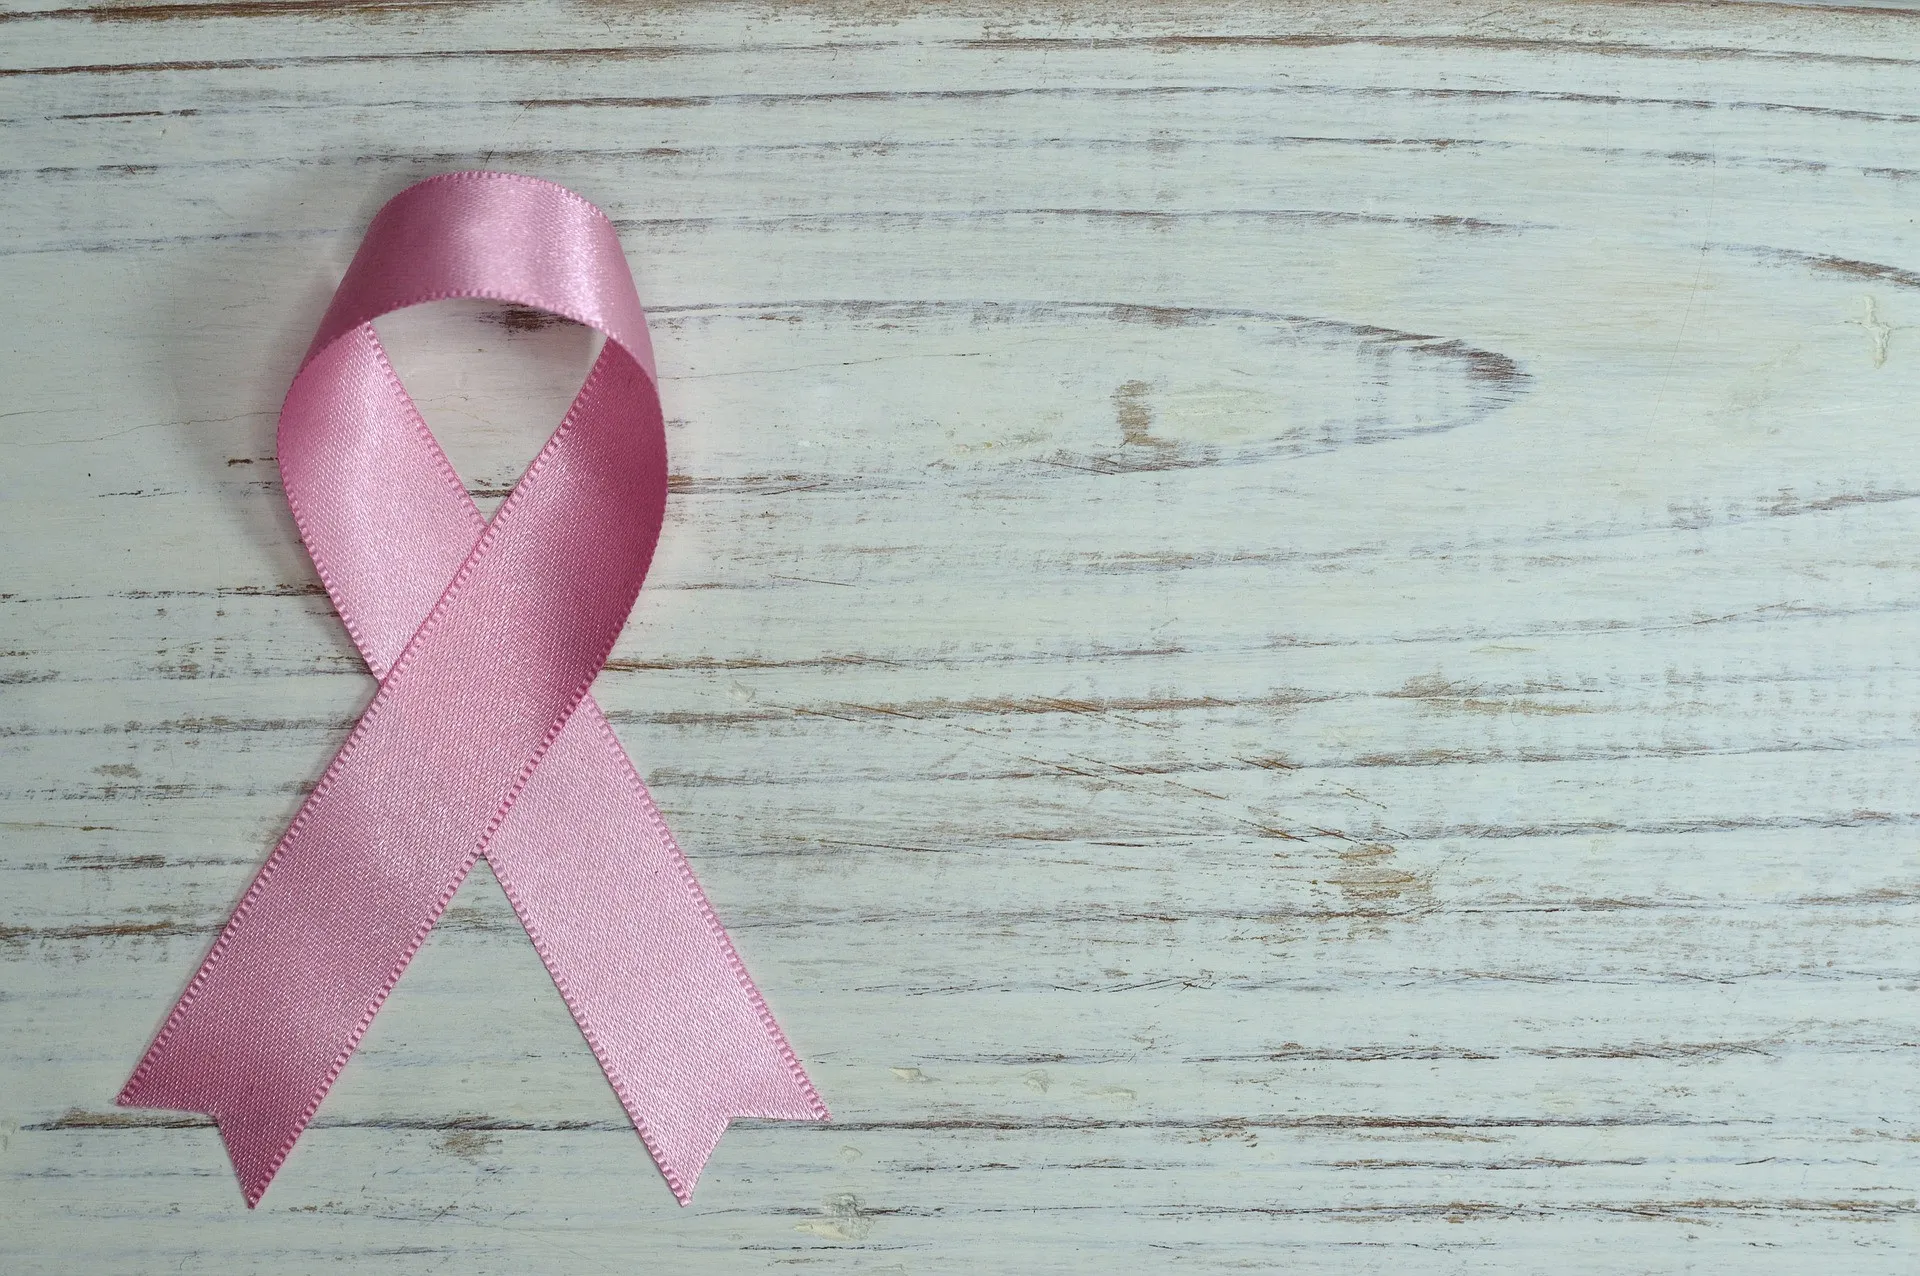 El miedo es la primera barrera en la lucha contra el cáncer de mama, dice experta